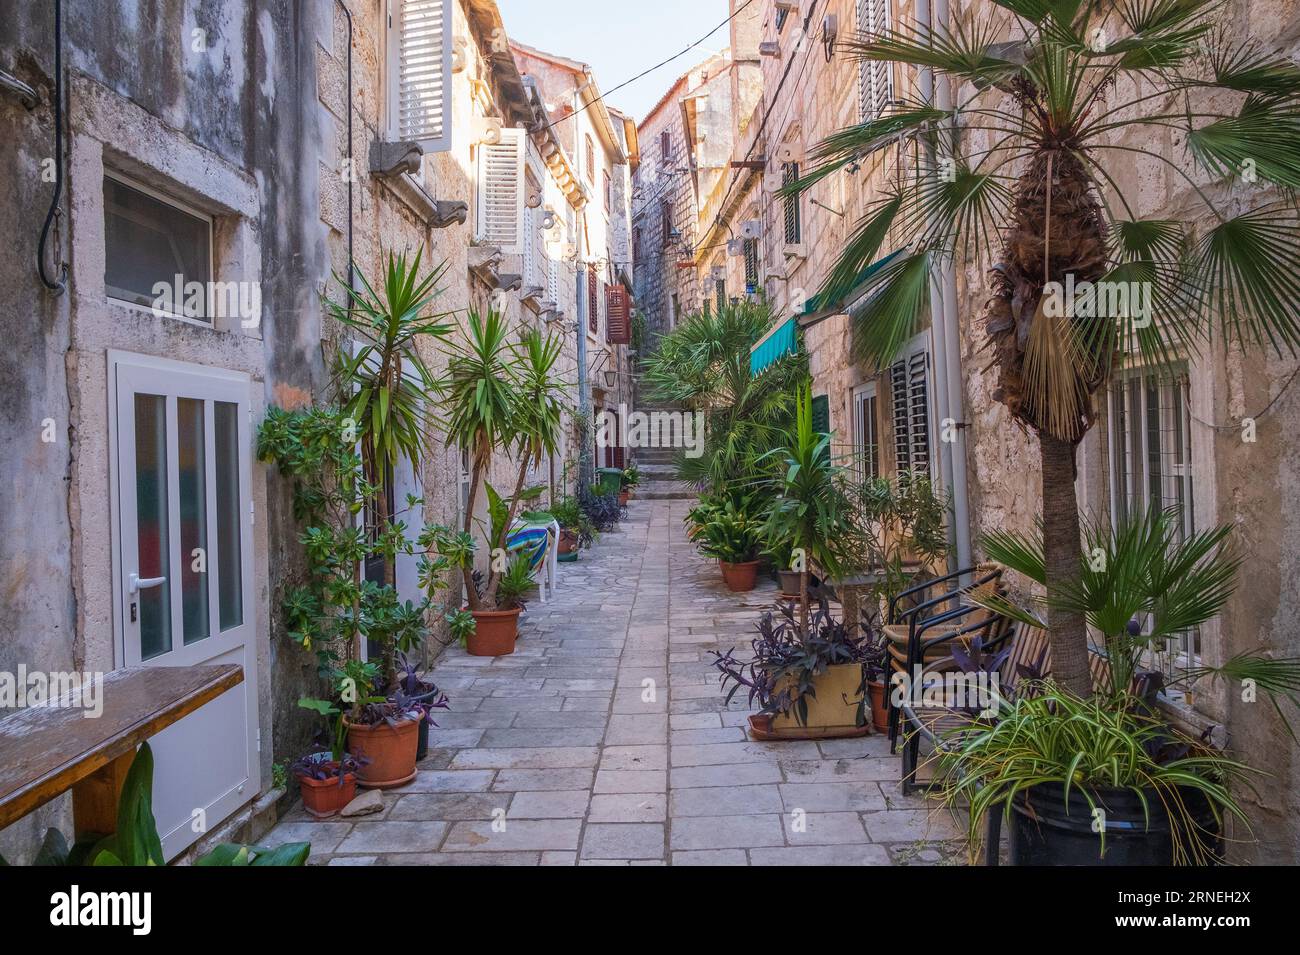 Vieille rue romantique dans la ville historique d'Orebic sur Peljsac, Dalmatie, Croatie Banque D'Images